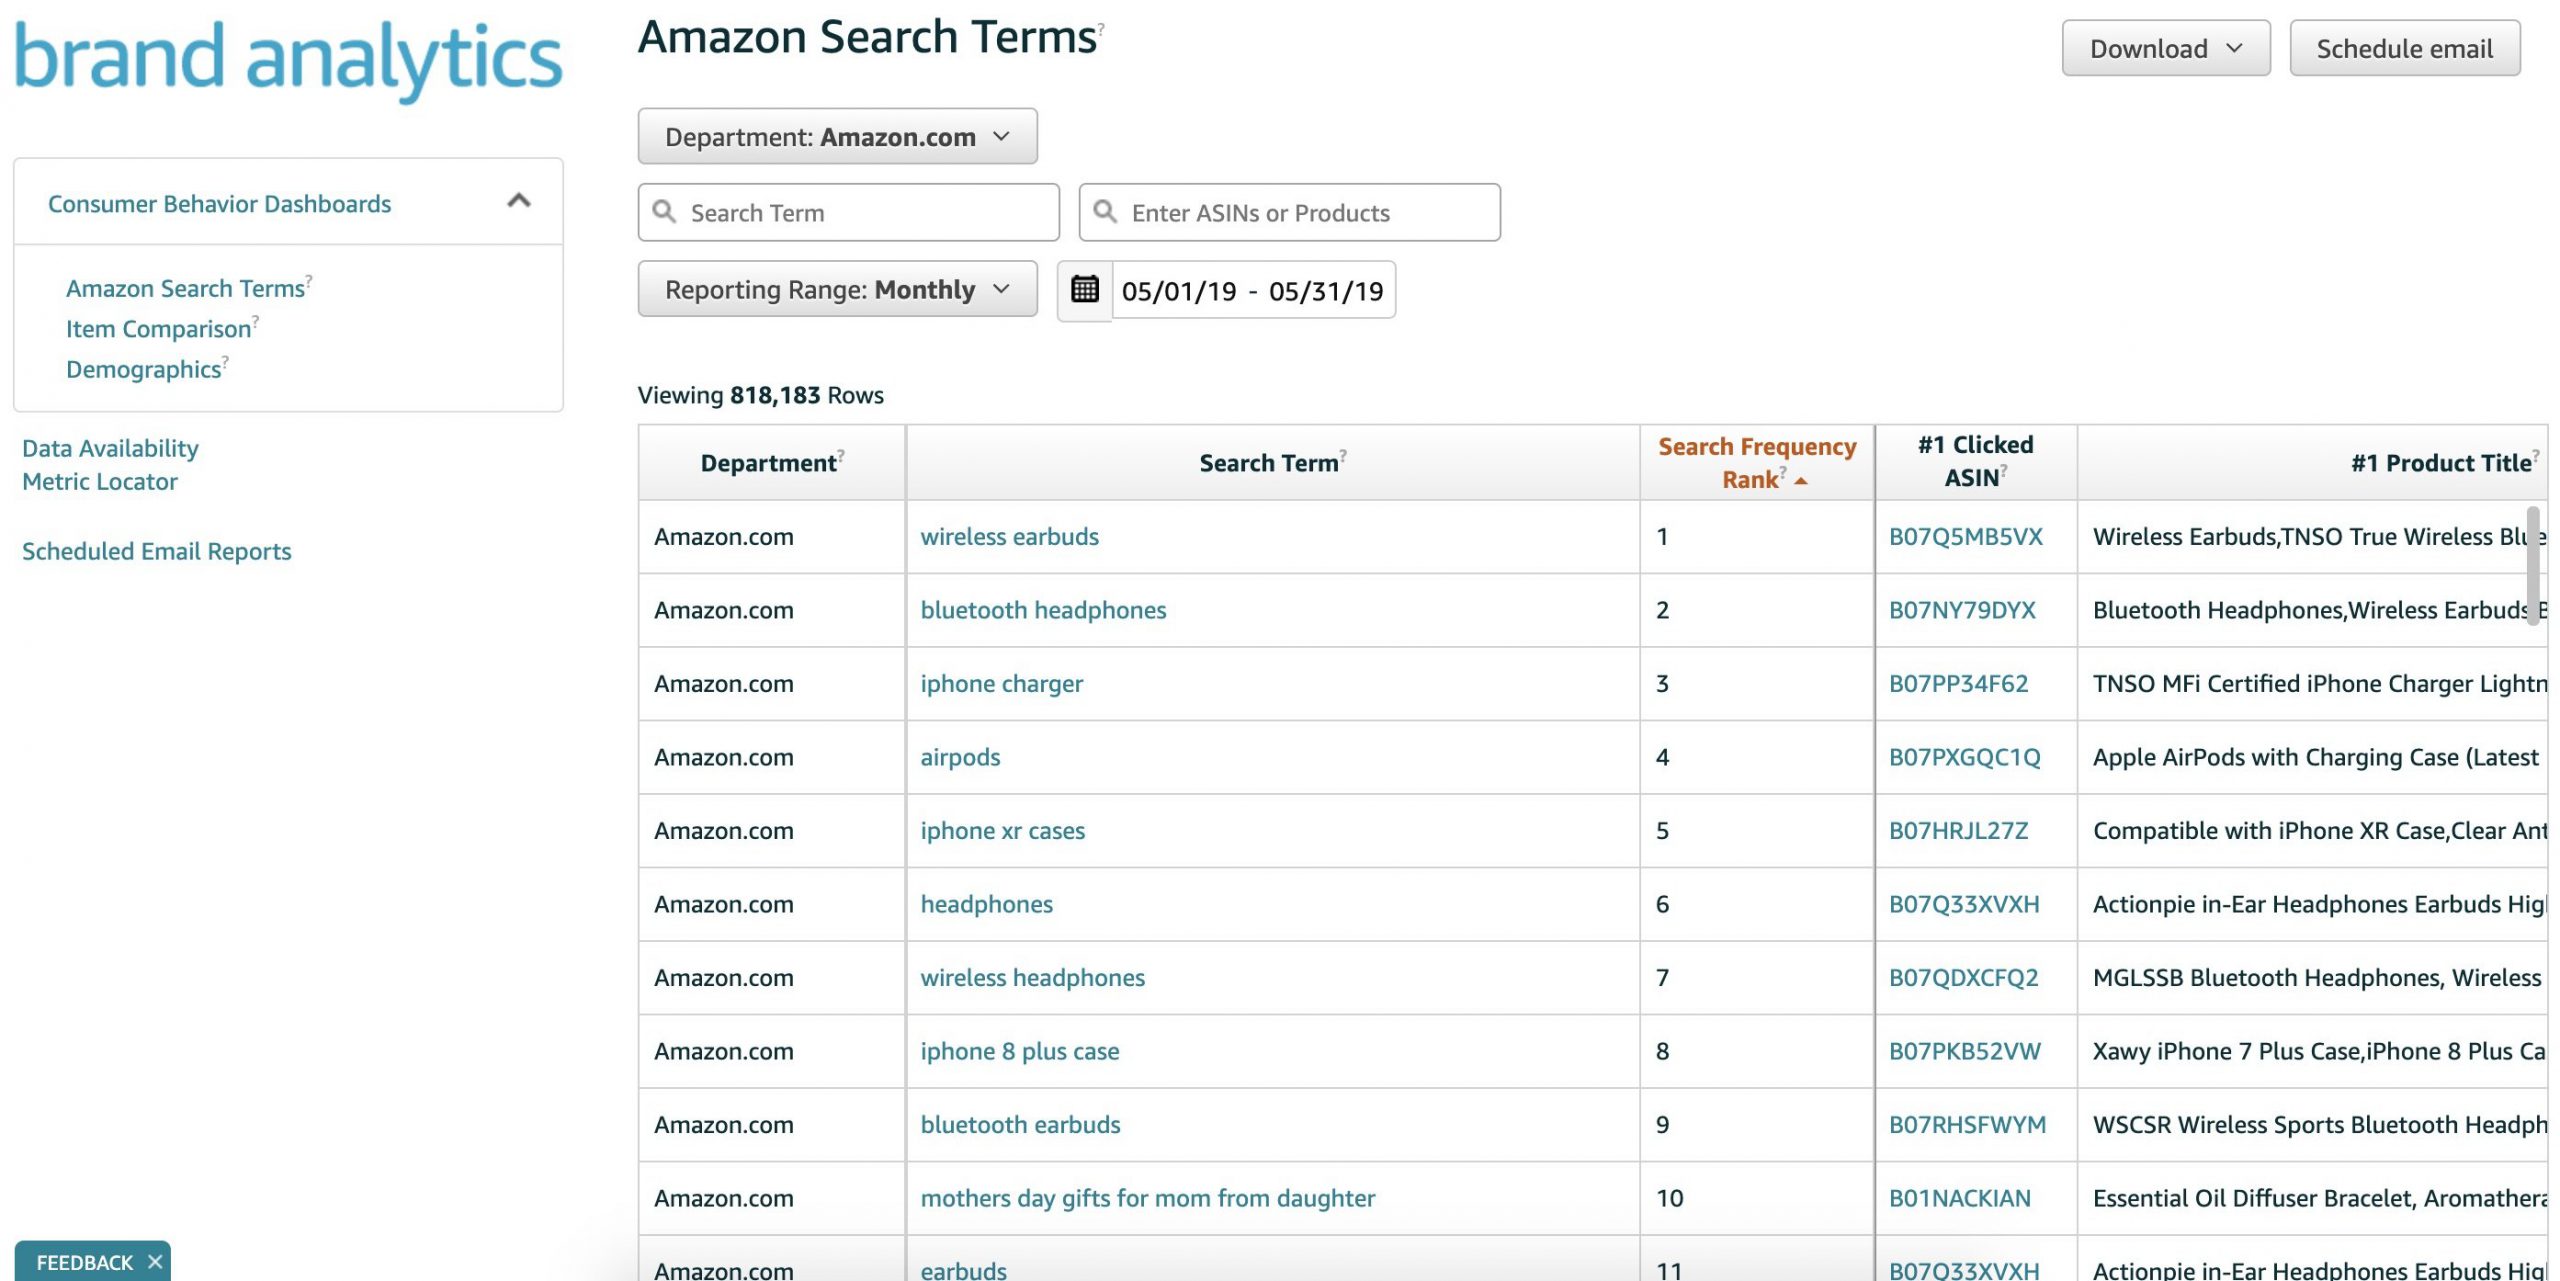 Amazon's Brand Analytics Dashboard